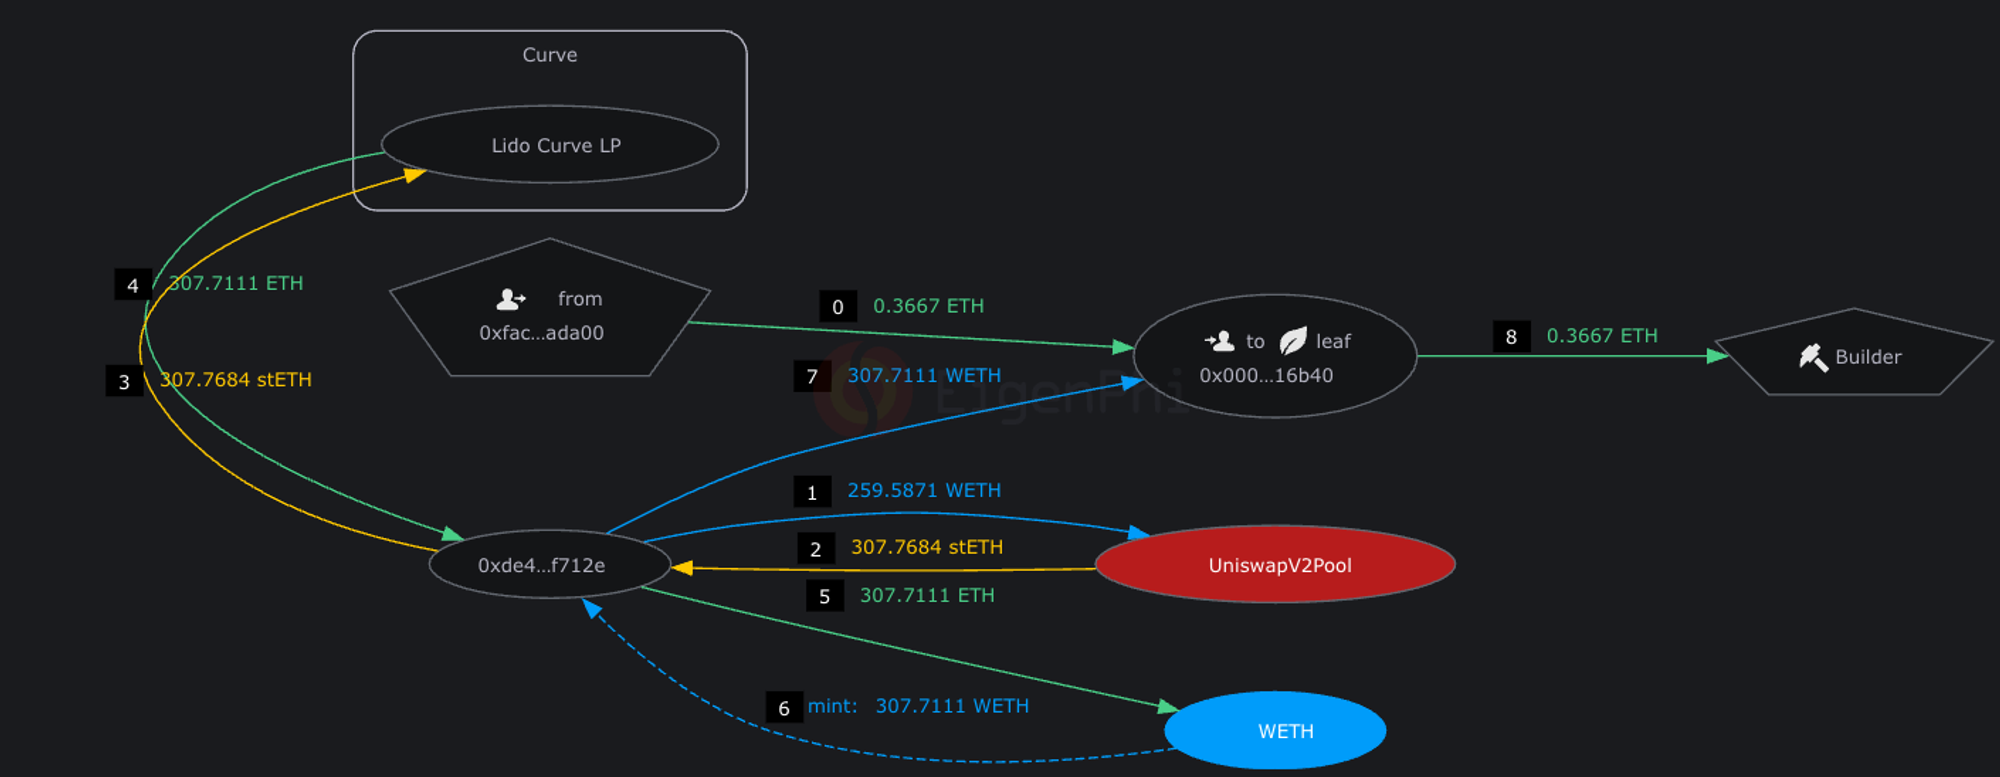 Token Flow of example MEV attack, source: Eigentx